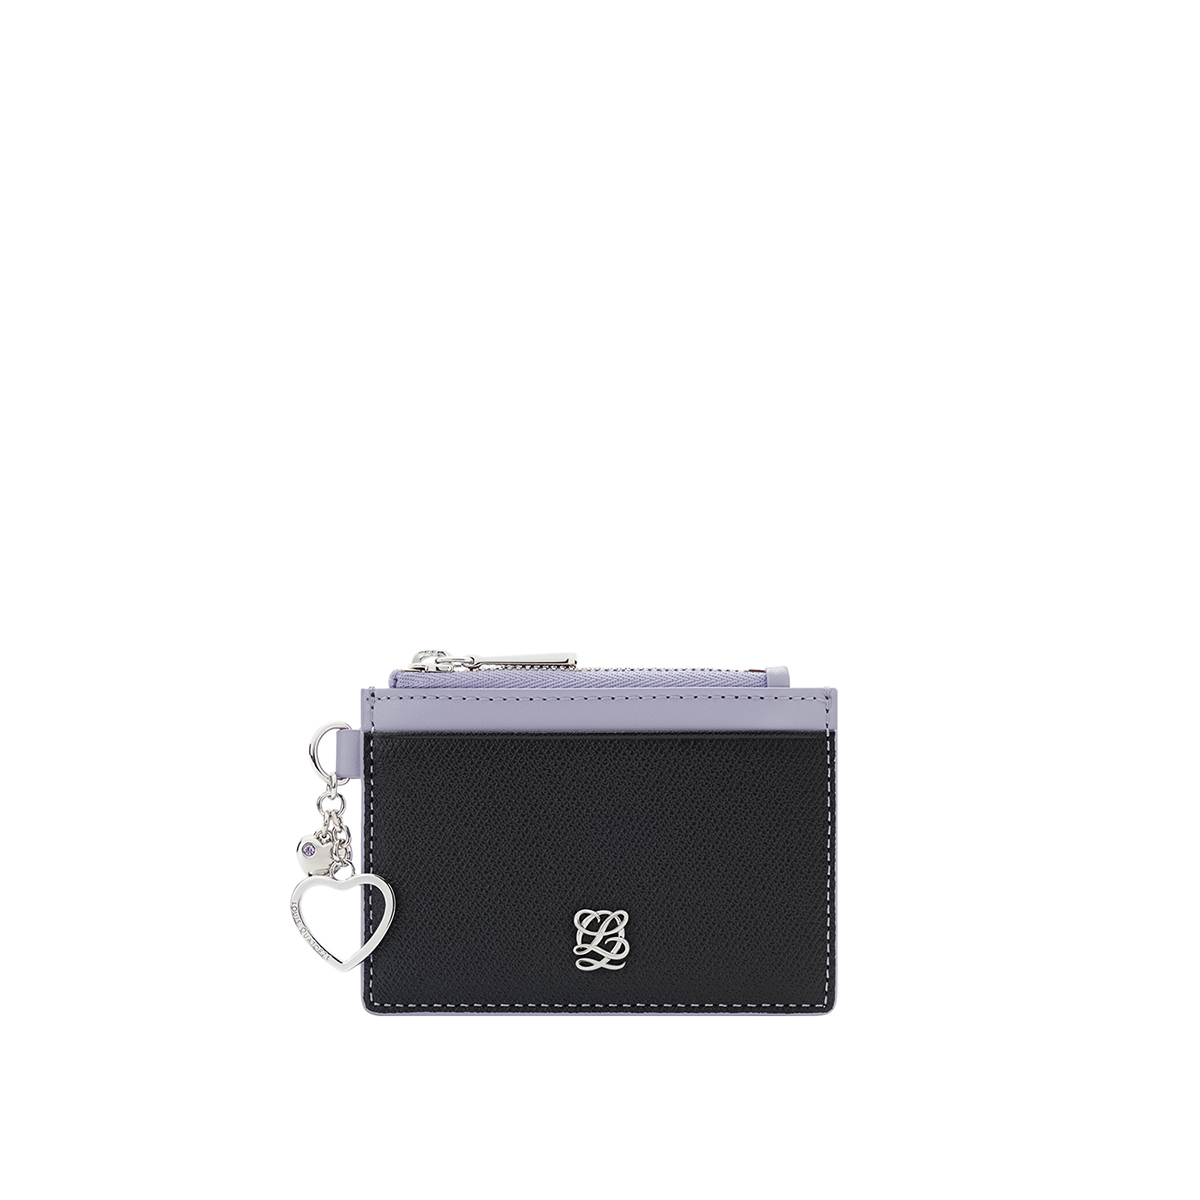 [공식몰단독] 루이까또즈 LALA(라라) 여성카드지갑 블랙 SS2SD73BL